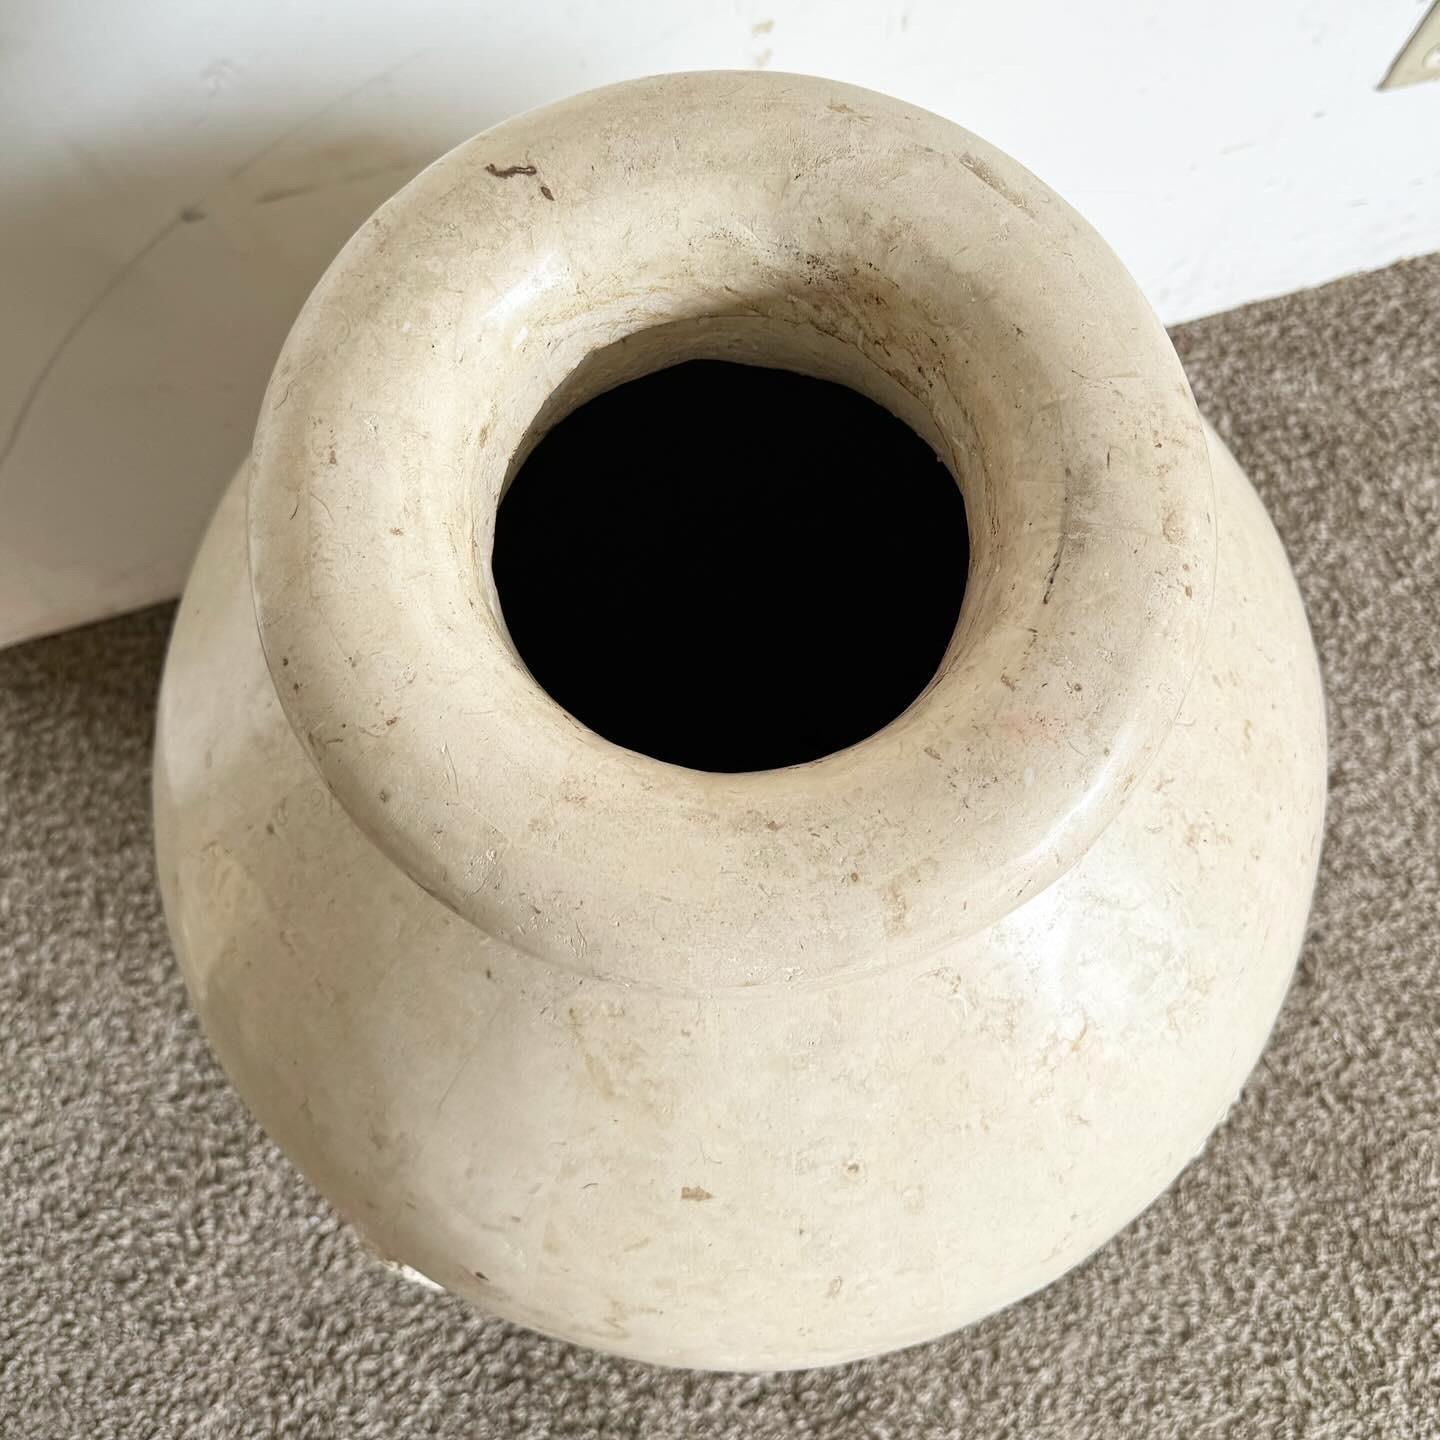 Peppen Sie Ihre Einrichtung mit der Postmodern Polished and Raw Tessellated Stone Floor Vase auf. Diese einzigartige Vase kombiniert polierten und rohen Stein und bietet einen atemberaubenden visuellen und texturellen Kontrast. Er ist ideal für